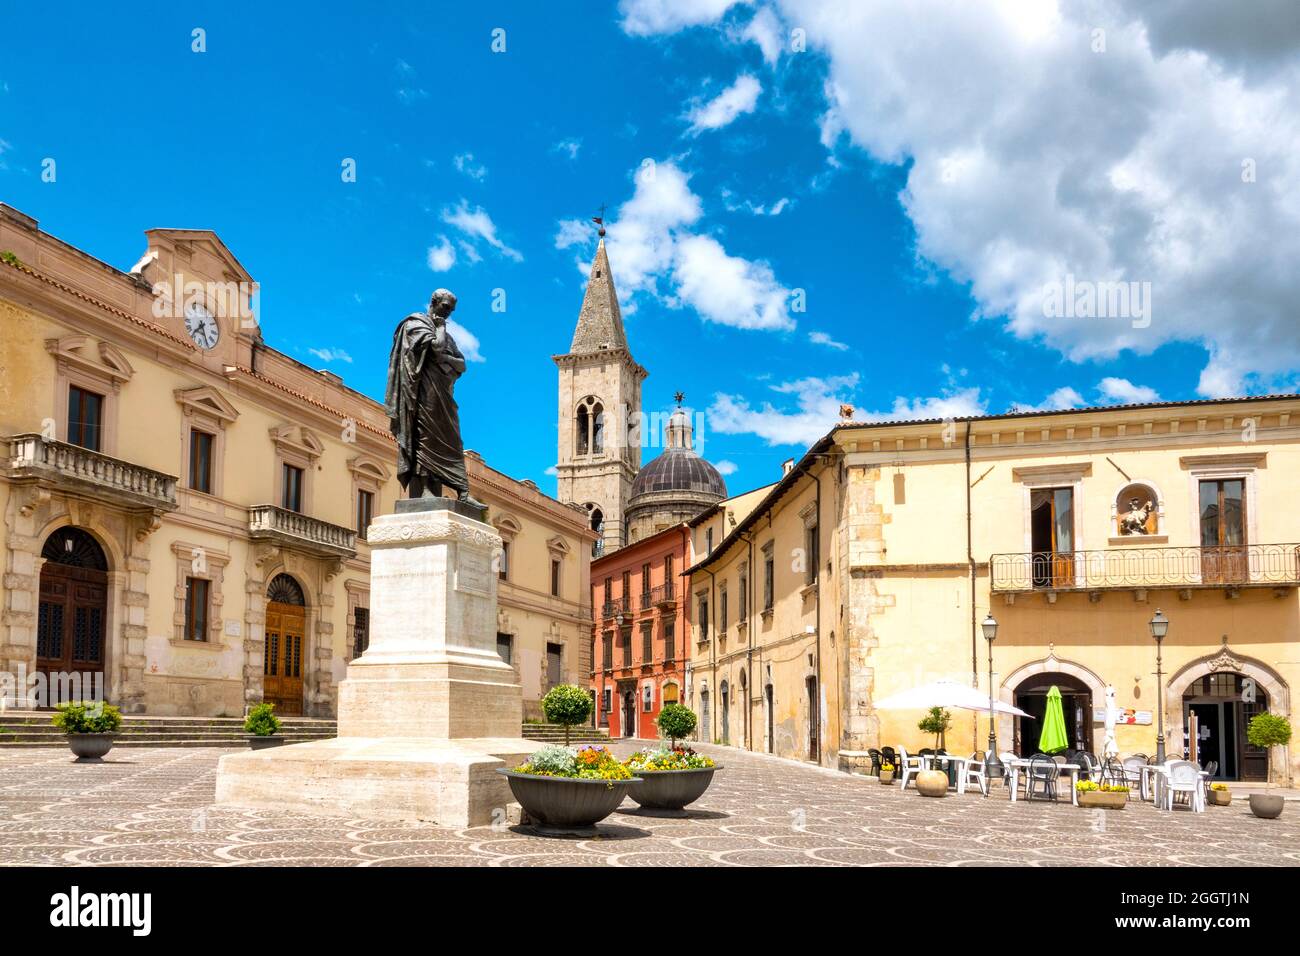 Statue d'Ovid sur la Piazza XX Settembre, Sulmona, Italie Banque D'Images